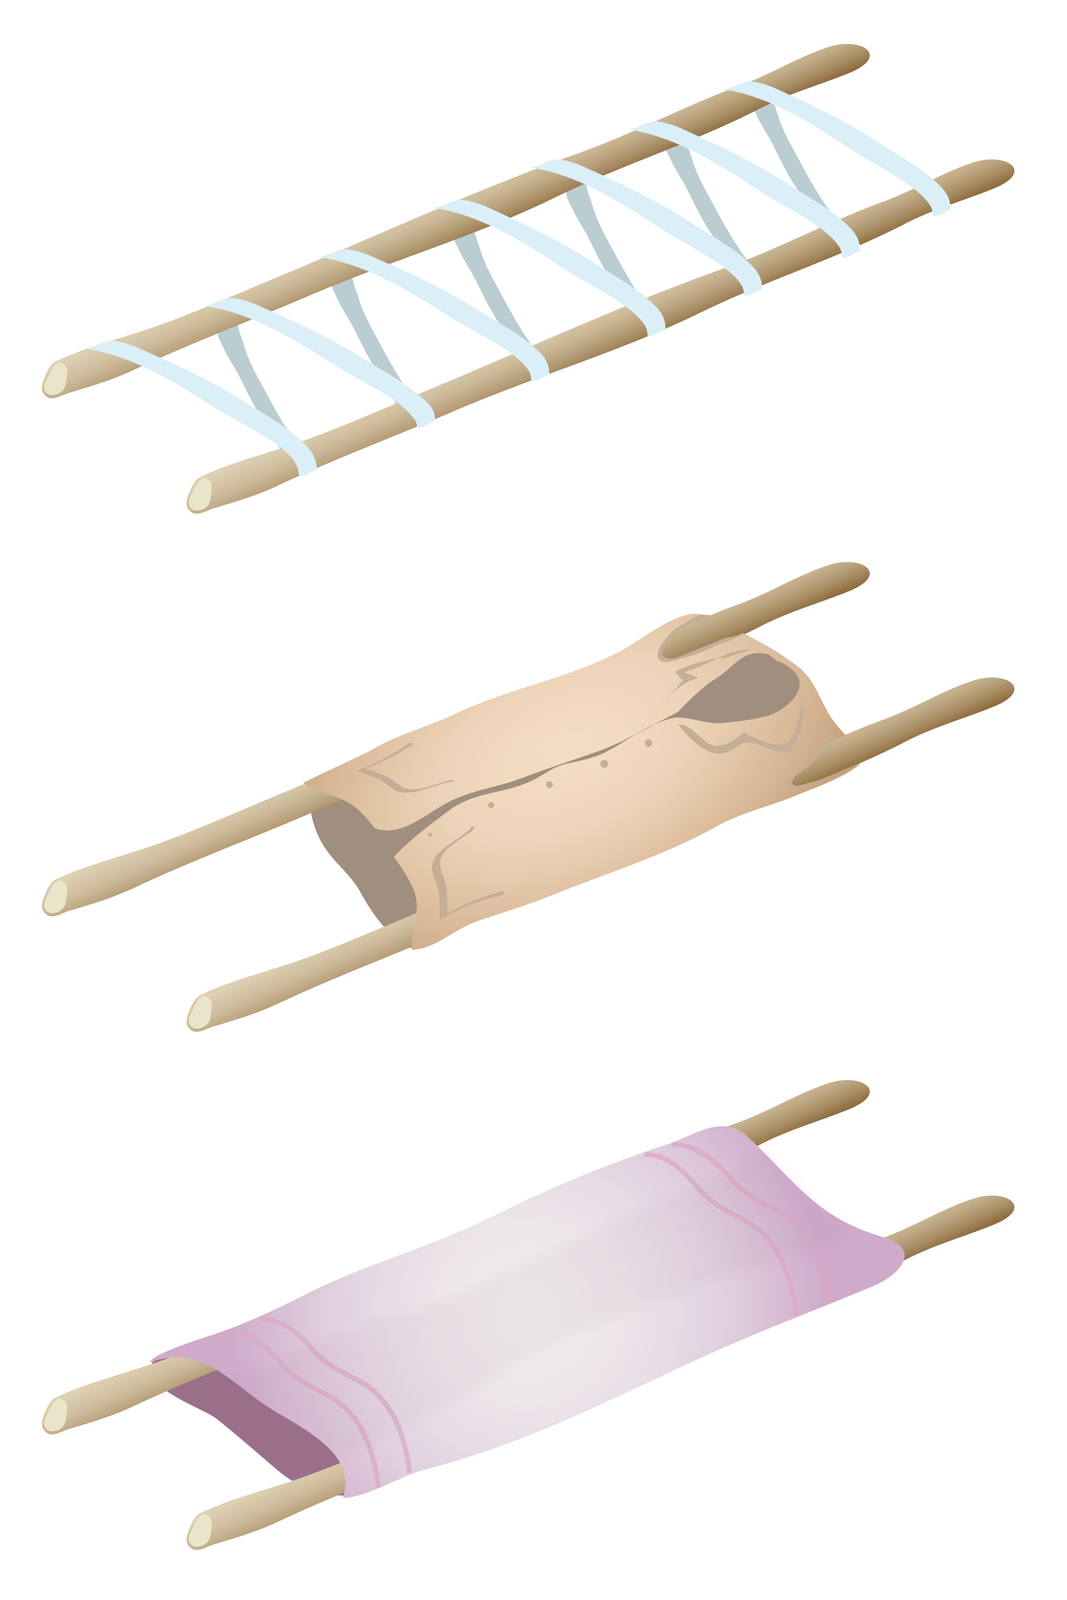 Ilustracja przedstawia trzy przykłady prowizorycznych noszy. Każde nosze zbudowane są na bazie dwóch długich kijów stanowiących stelaż. Połączenie drewnianych kijów jest różnorodne. W pierwszym przypadku kije połączone są szerokim pasem owiniętym wokół kijów, tworząc ukośną drabinkę. W drugim przypadku za element nośny służy duża męska koszula naciągnięta na kije przeciągnięte przez rękawy koszuli. W trzecim przypadku wokół kijów owinięty i naciągnięty jest gruby koc.